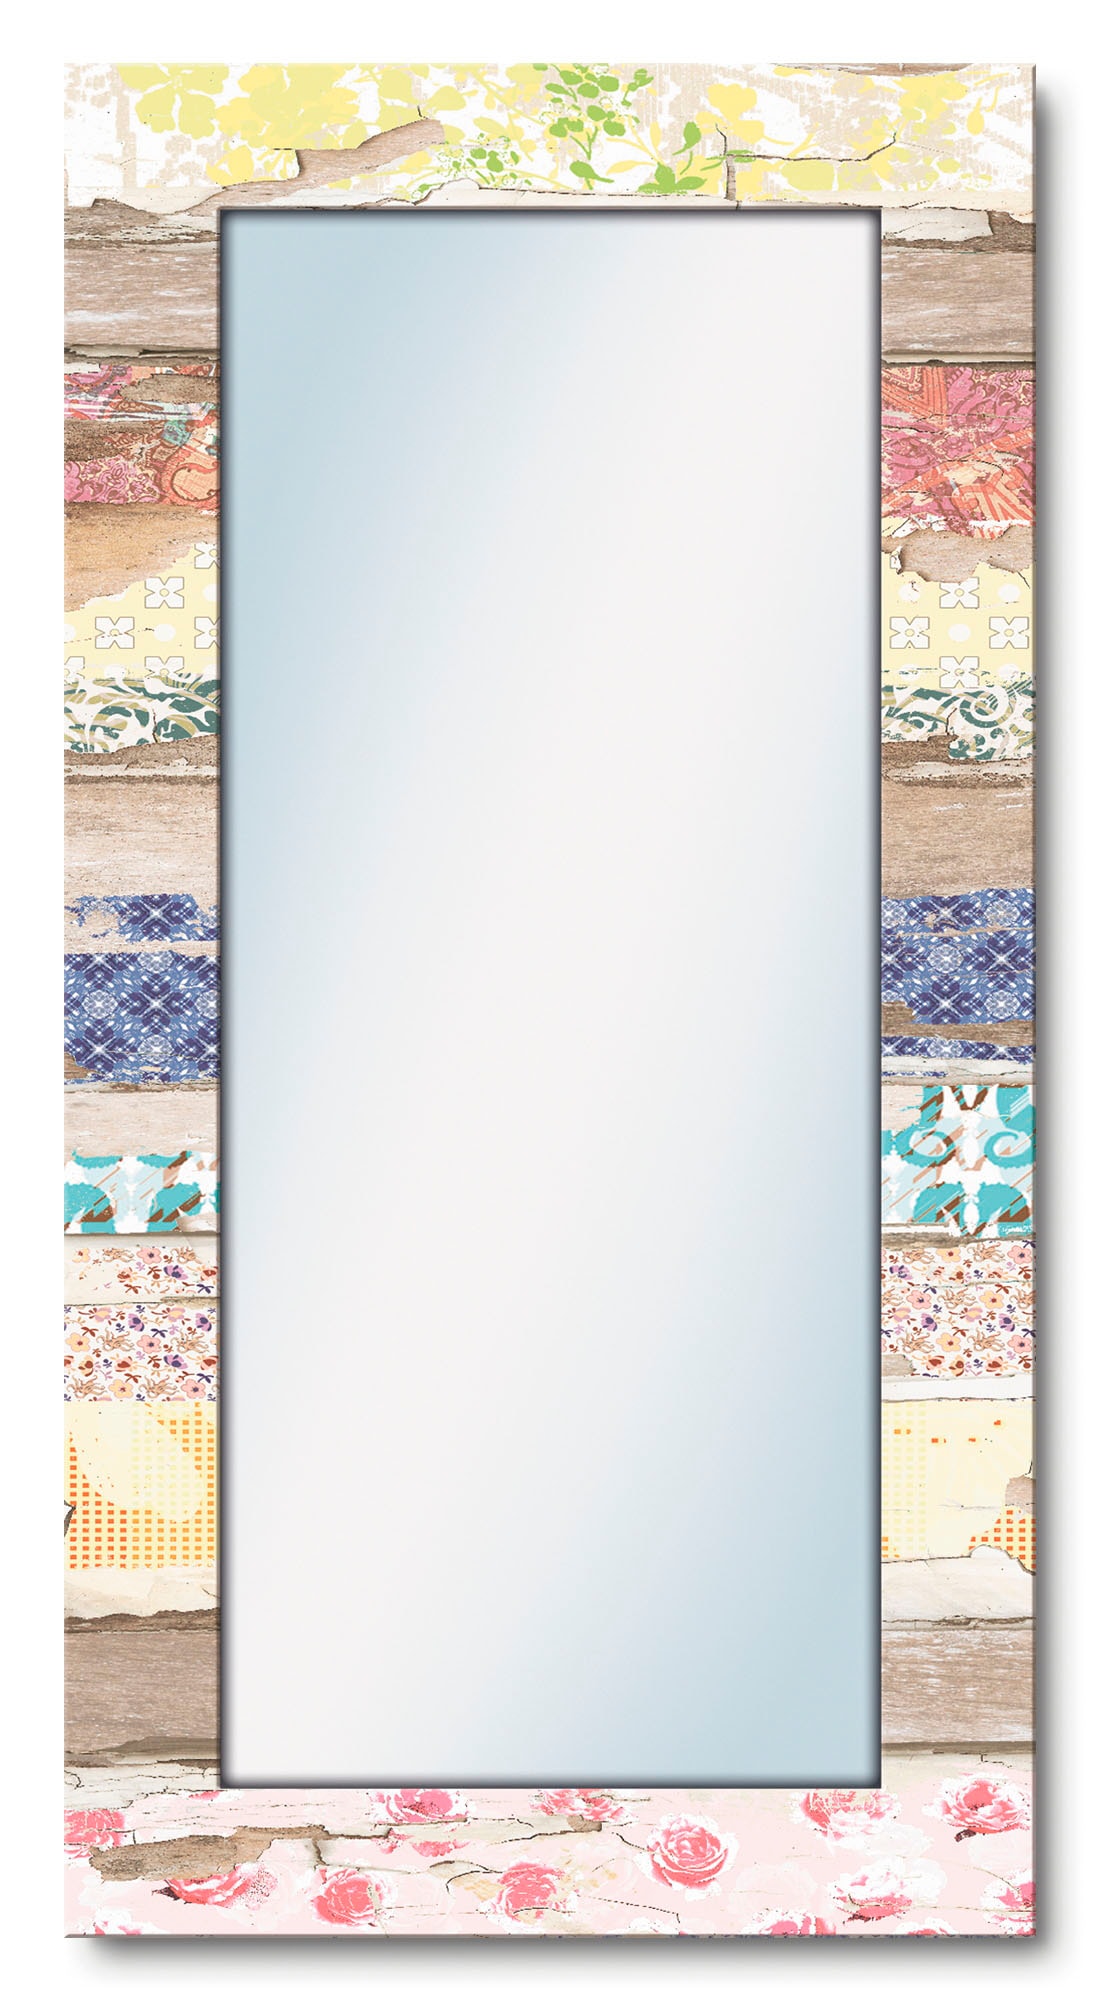 Artland Dekospiegel »Verschiedene Muster auf Ganzkörperspiegel, Holz«, Motivrahmen, gerahmter Wanspiegel modern mit OTTO bestellen bei